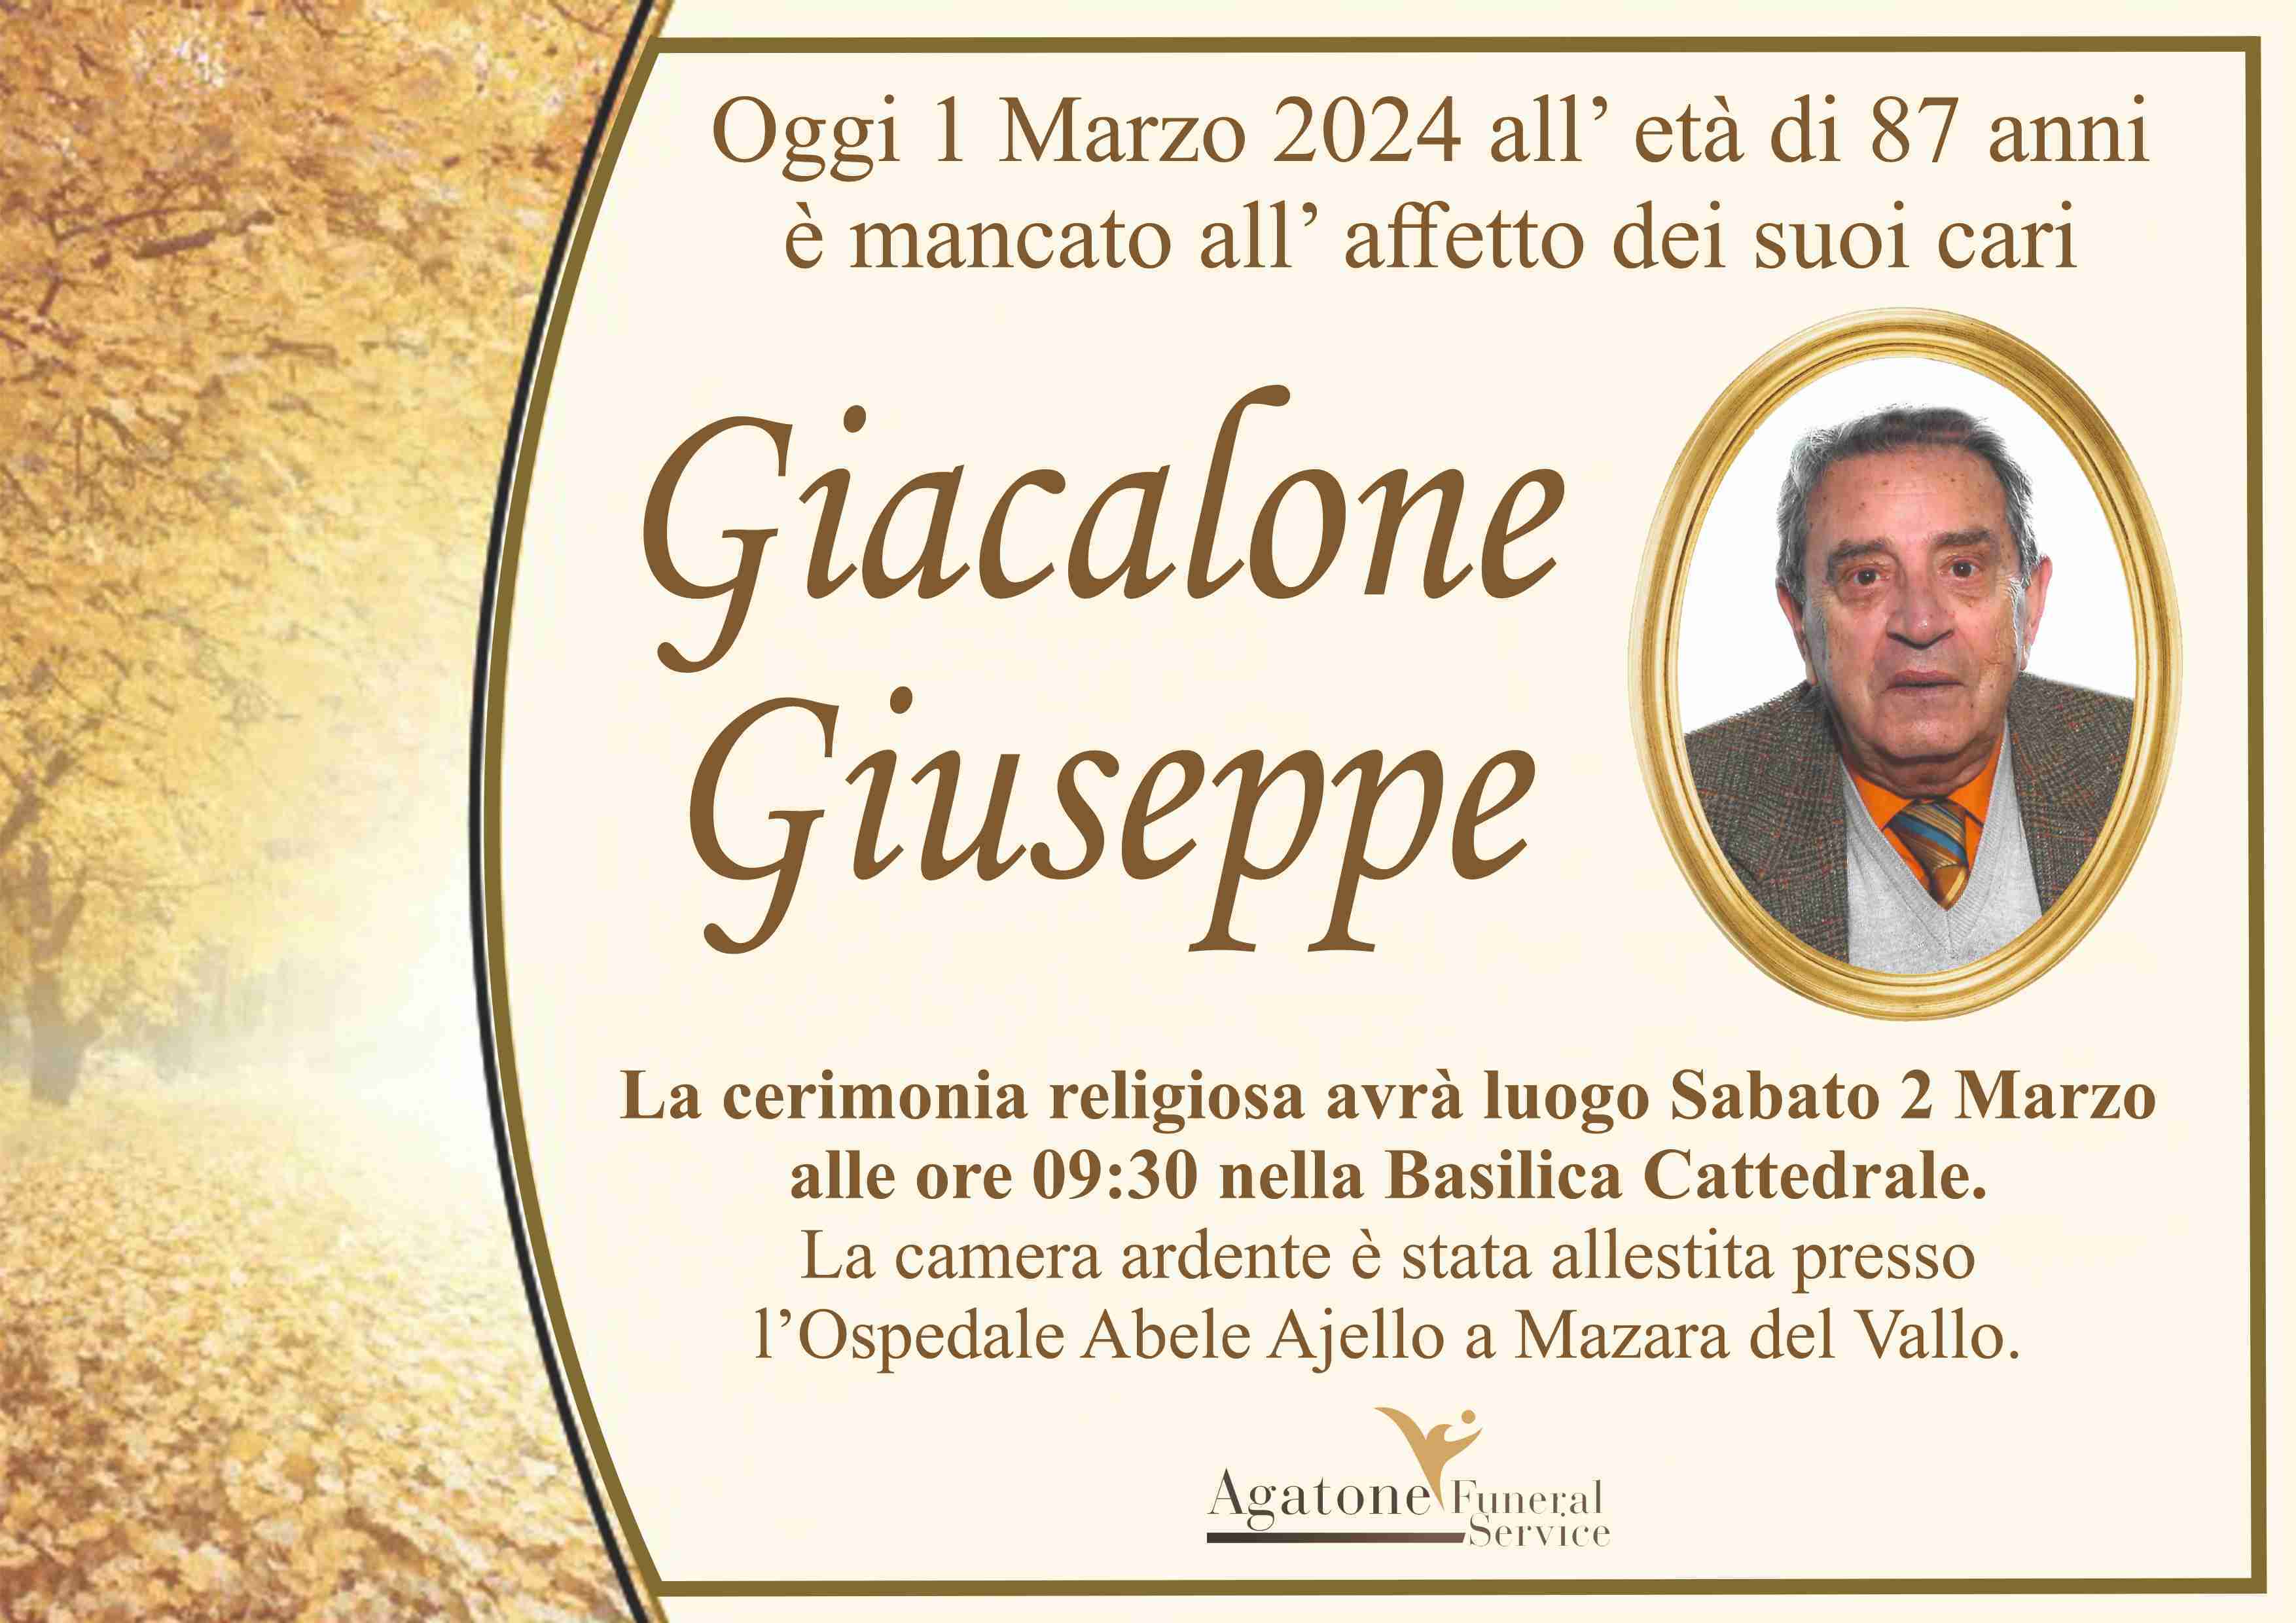 Giuseppe Giacalone